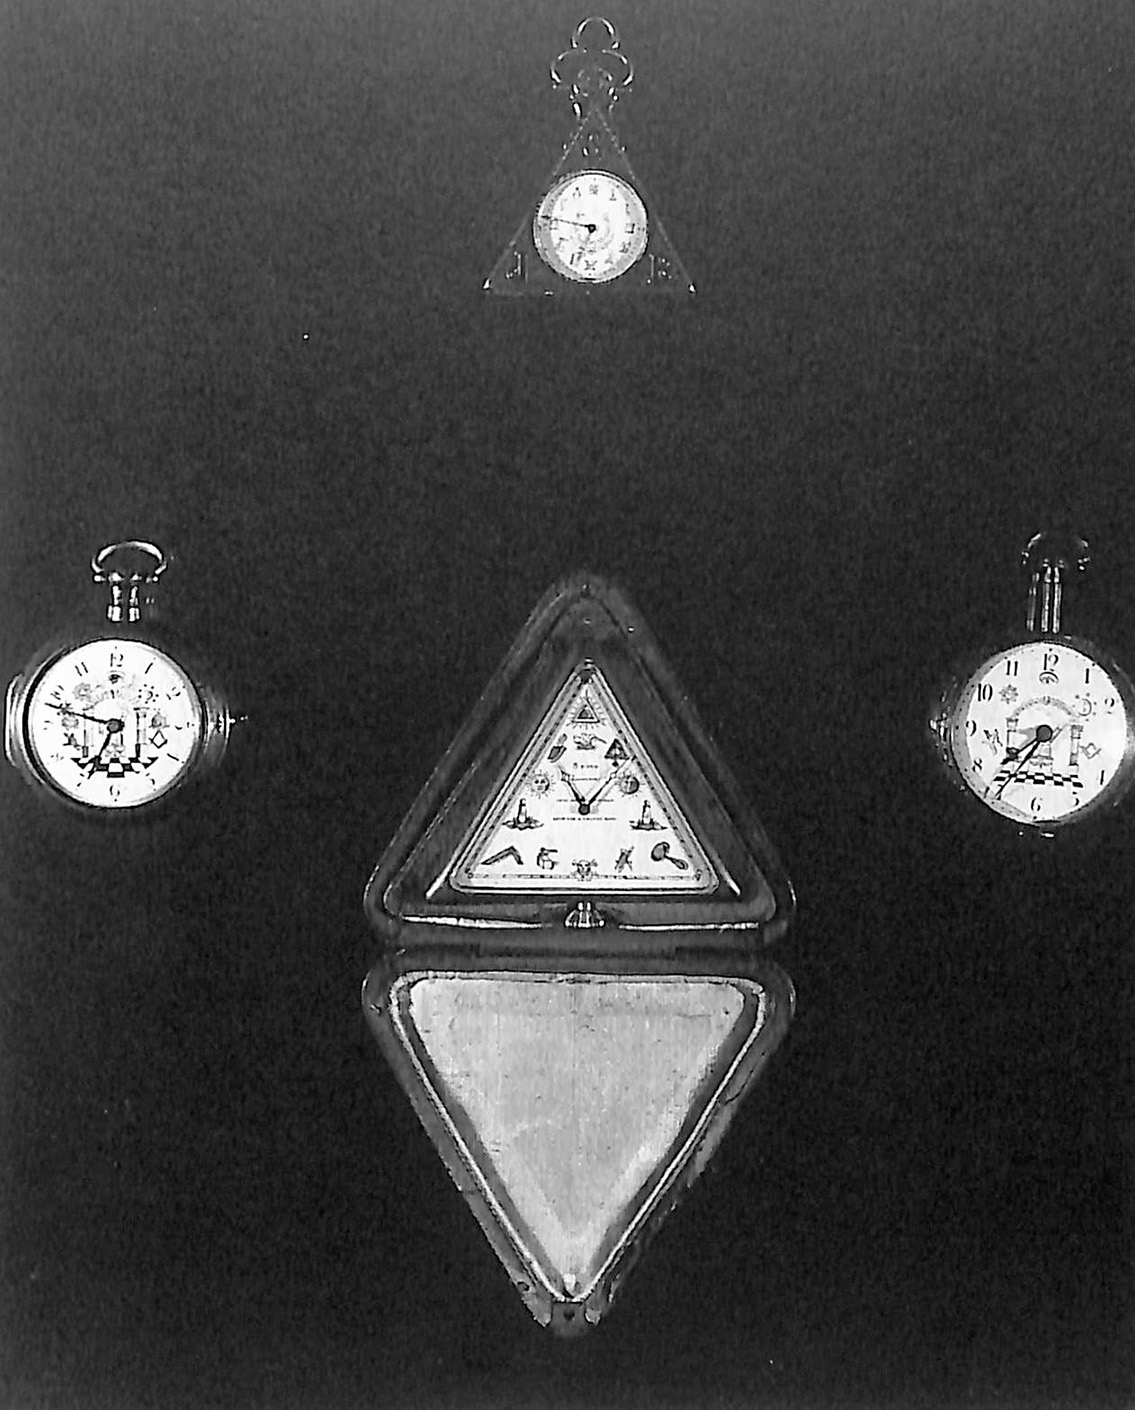 Masonic Clocks and Watches